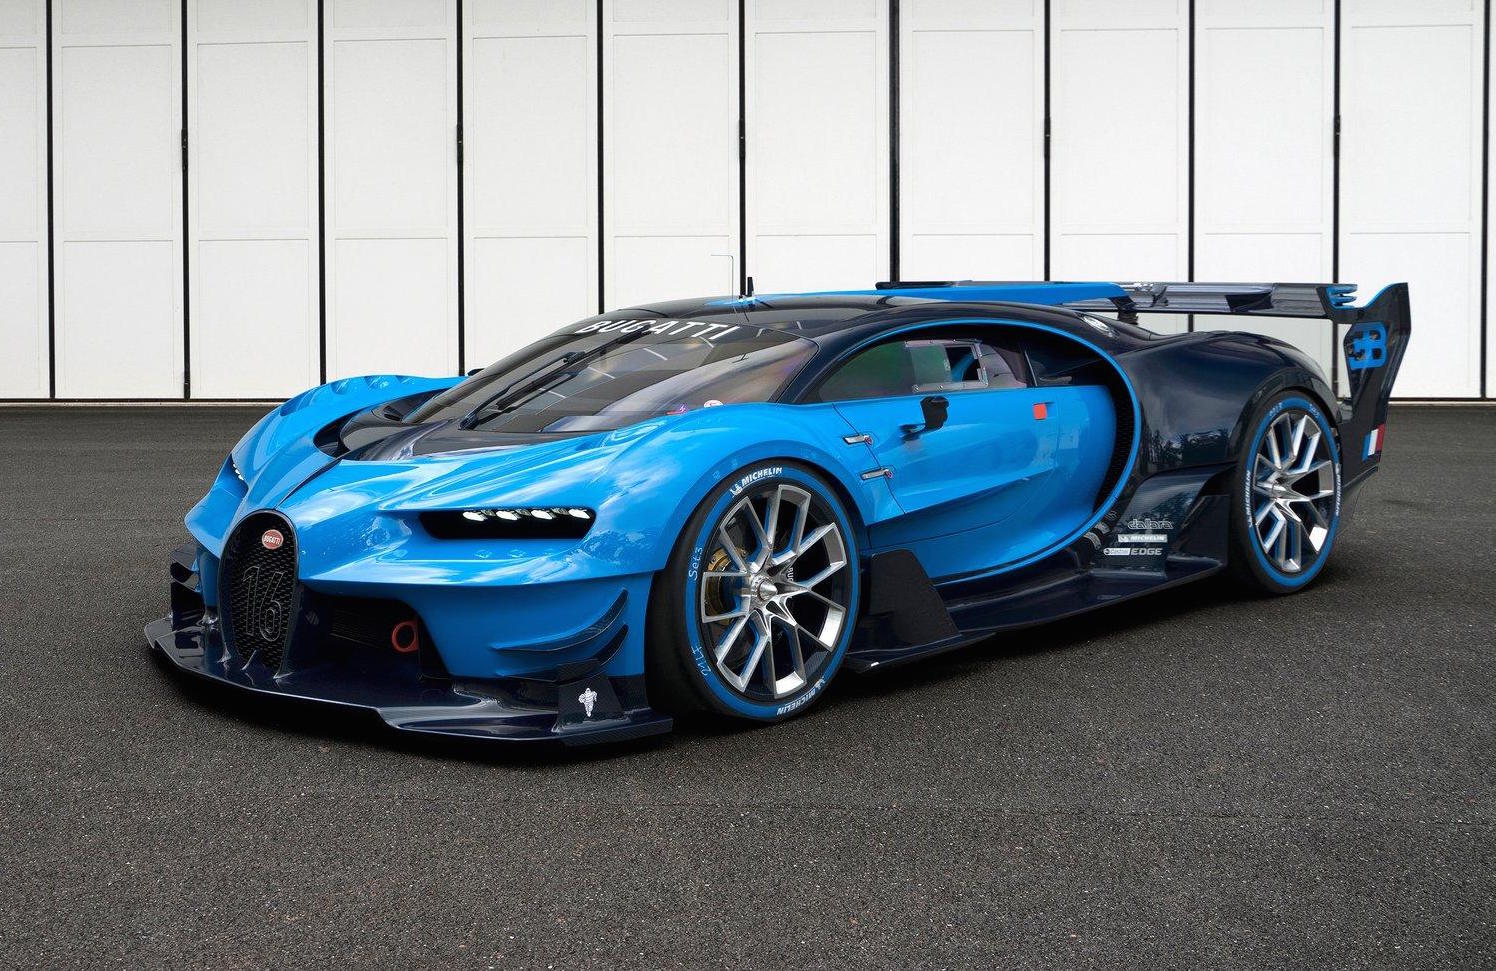 A New Horizon: The 2015 Bugatti Vision Gran Turismo Concept